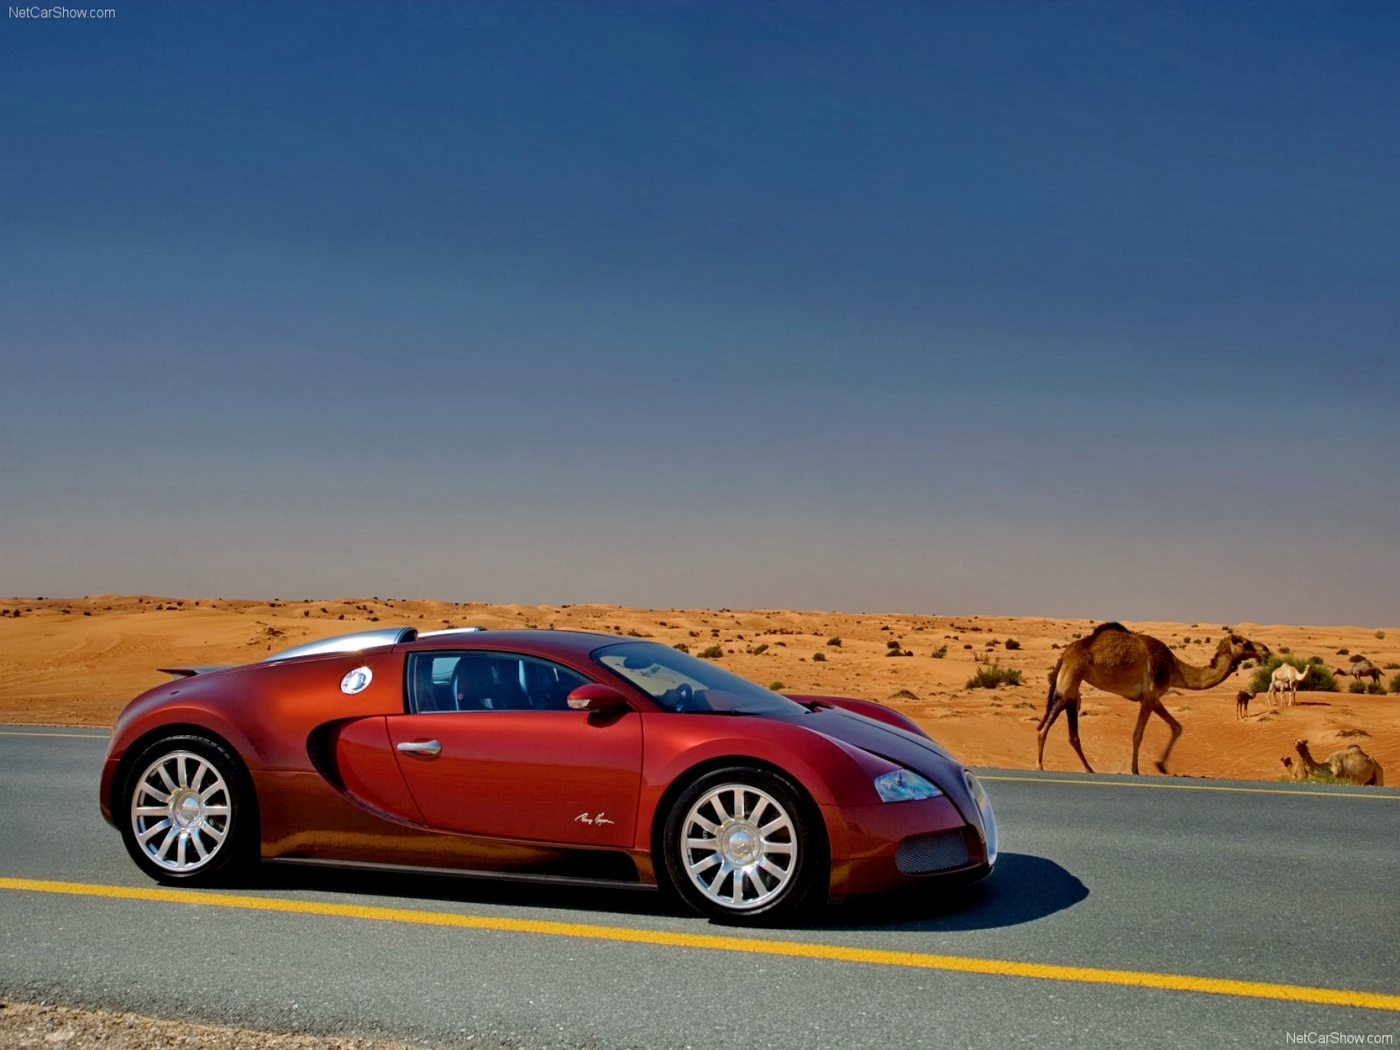 Скачать картинку Транспорт, Бугатти (Bugatti), Машины в телефон бесплатно.